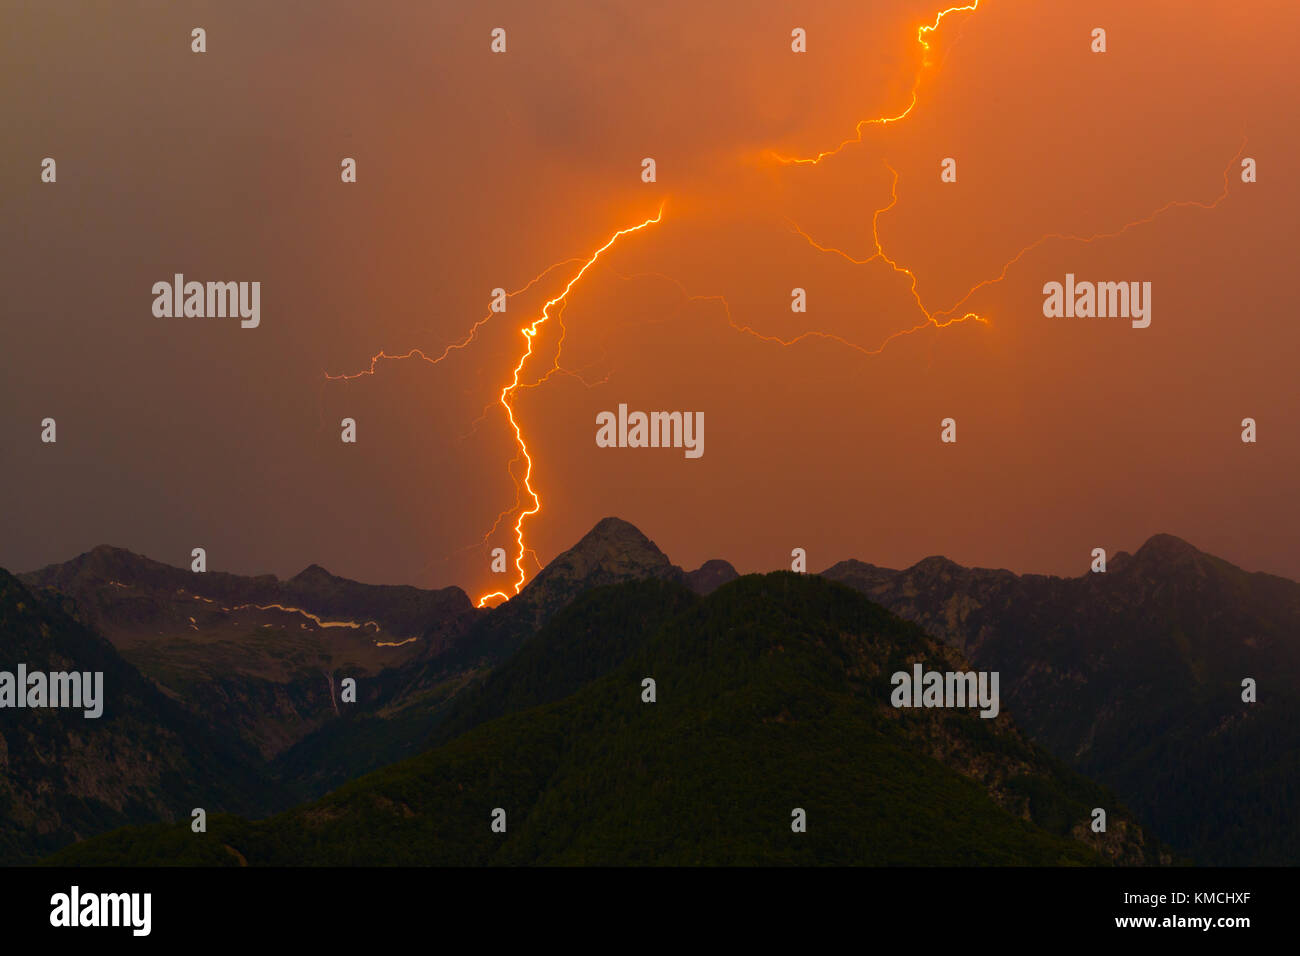 Spettacolare naturale di fulmine sciopero nel picco di montagna silhouette, orange sky, cloud Foto Stock